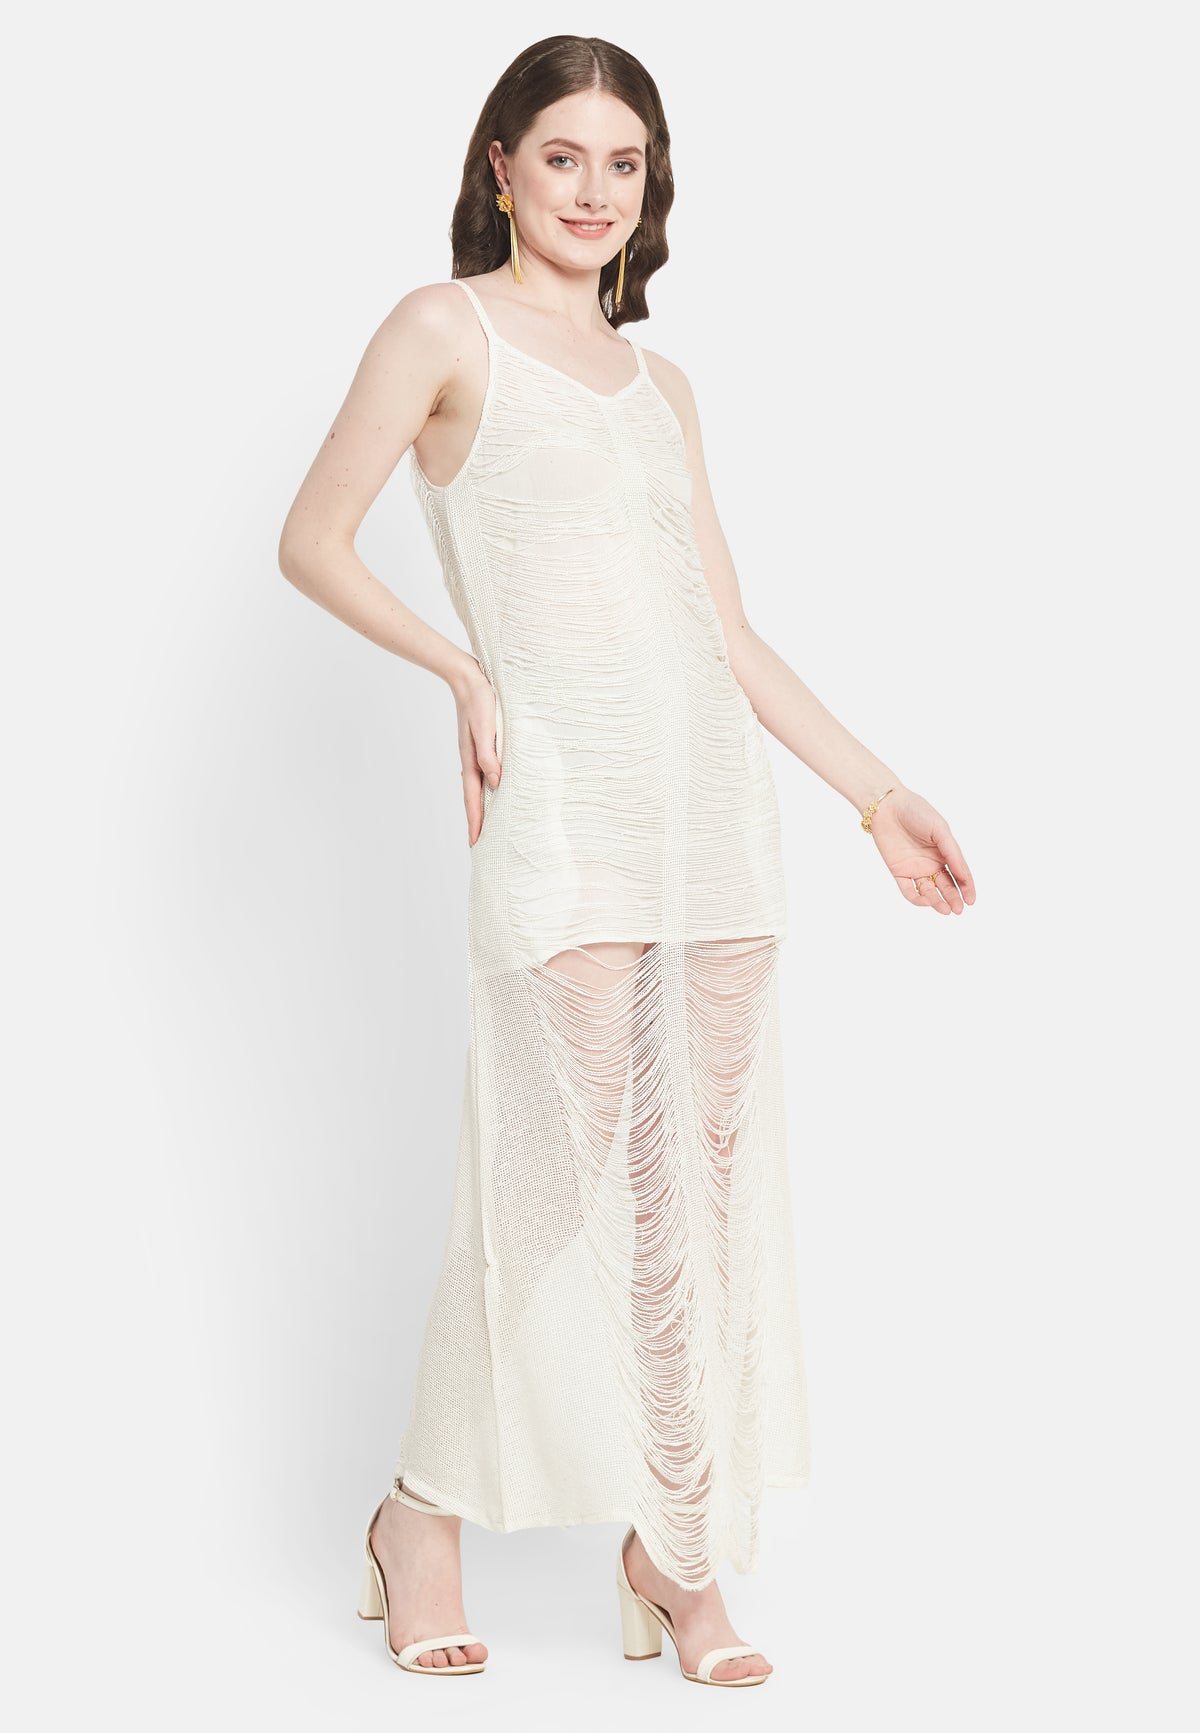 Glimmer White Dress